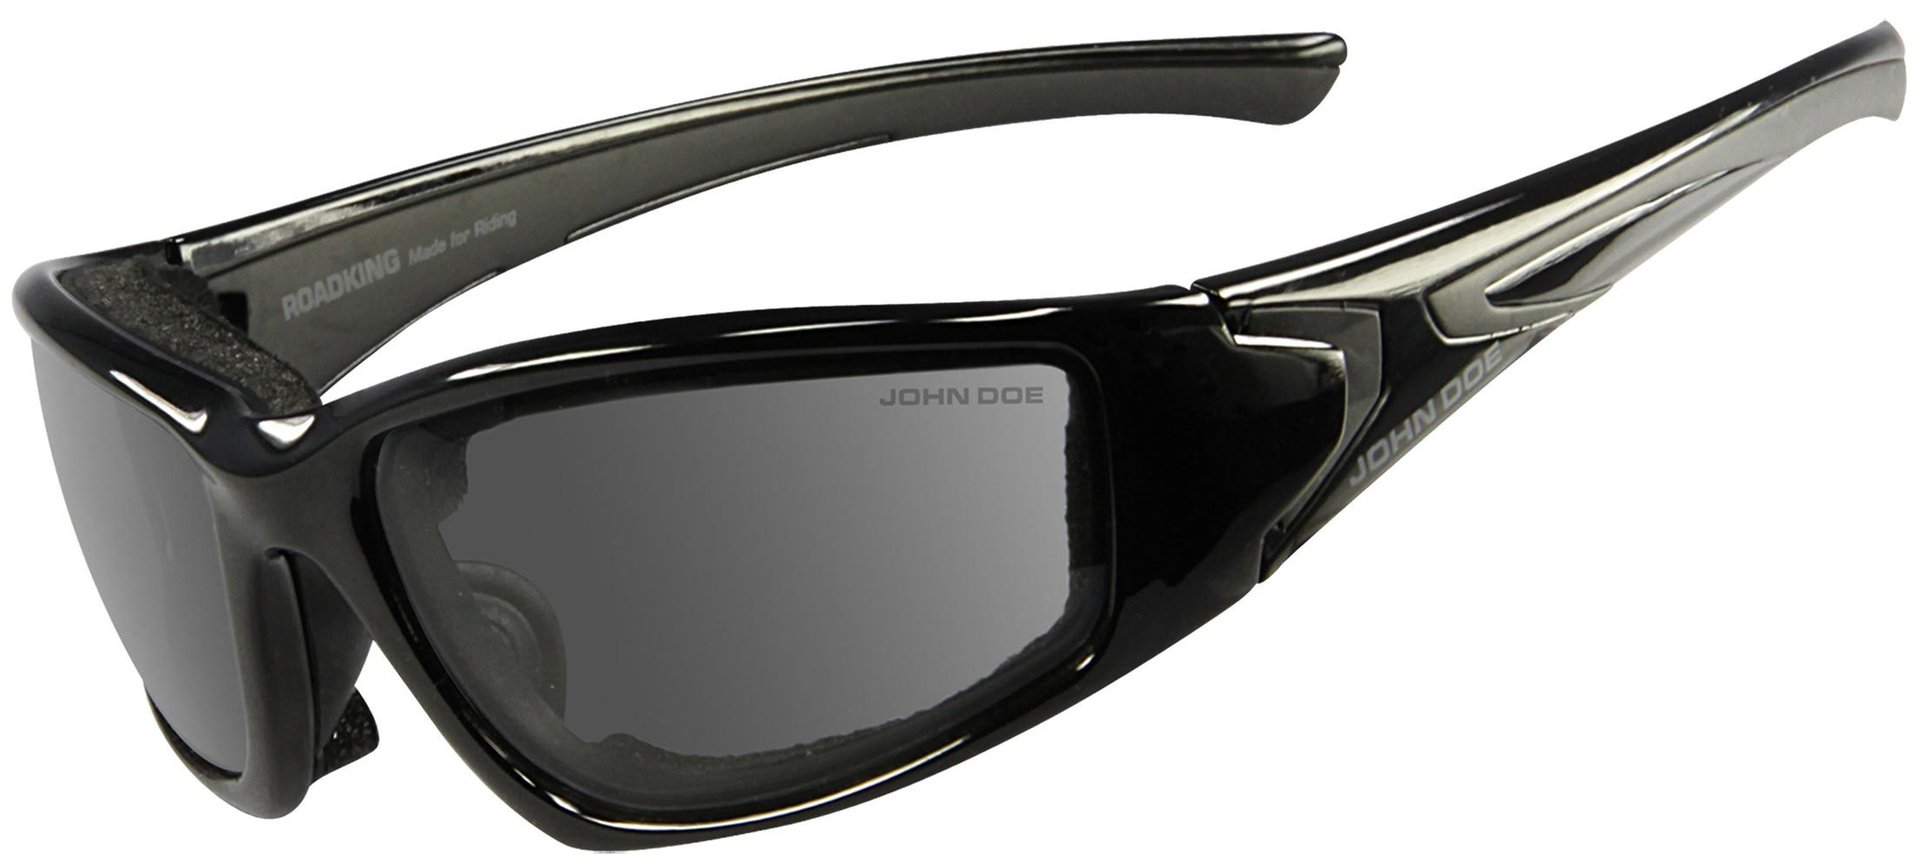 солнцезащитные очки unofficial черный Очки John Doe Roadking Photocromatic солнцезащитные, черный